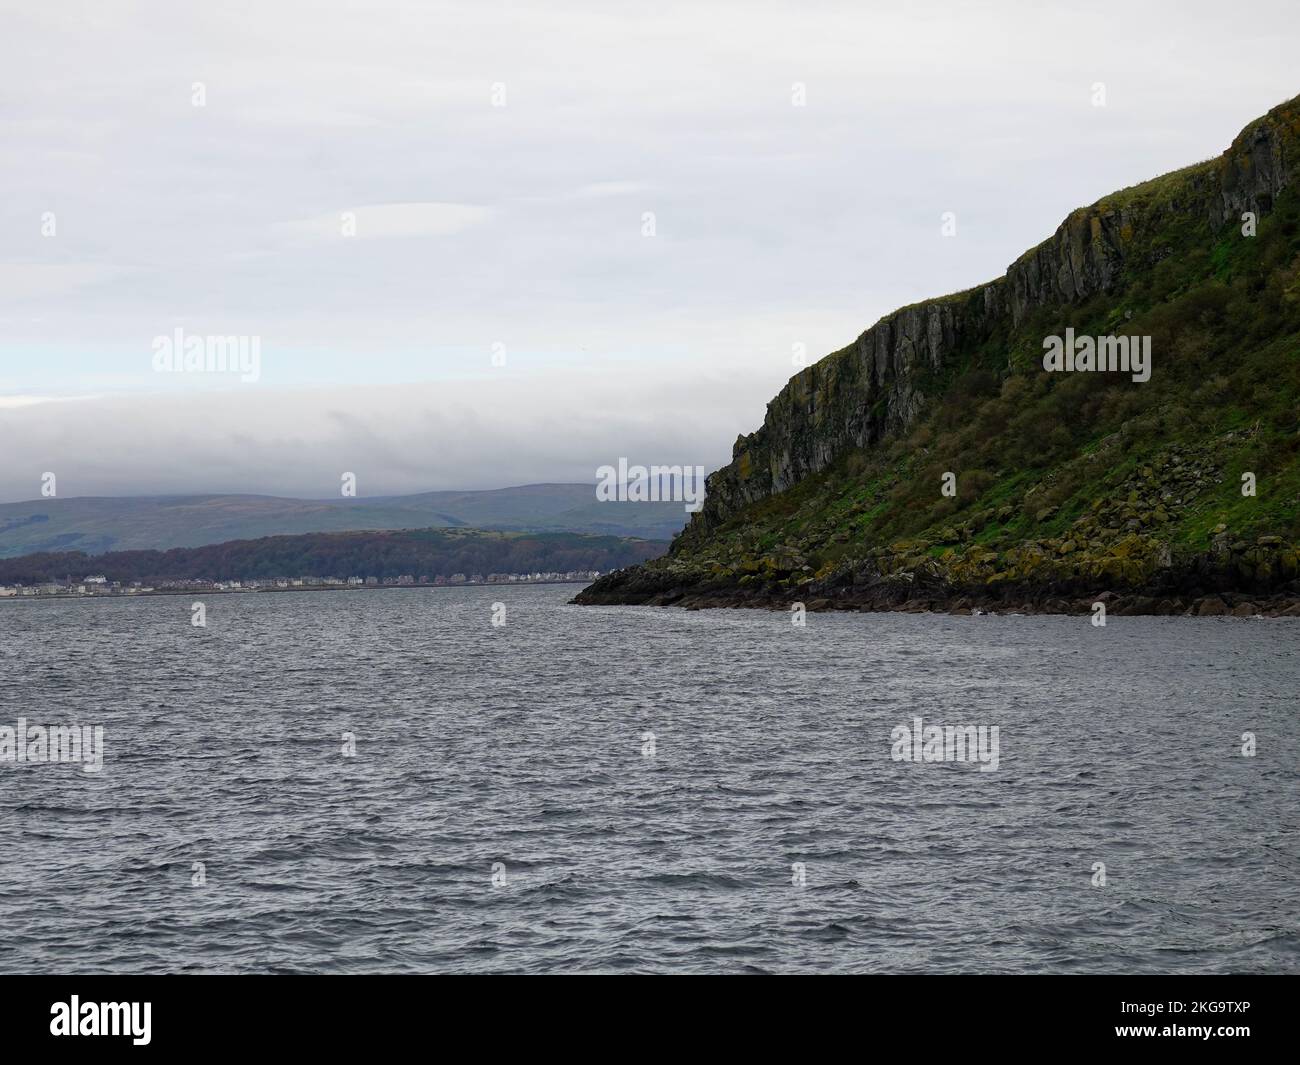 Extrémité nord de l'île de Little Cumbrae, nuageux, journée brumeuse, avec collines, bâtiments, Maisons au loin, Écosse, Royaume-Uni. Banque D'Images